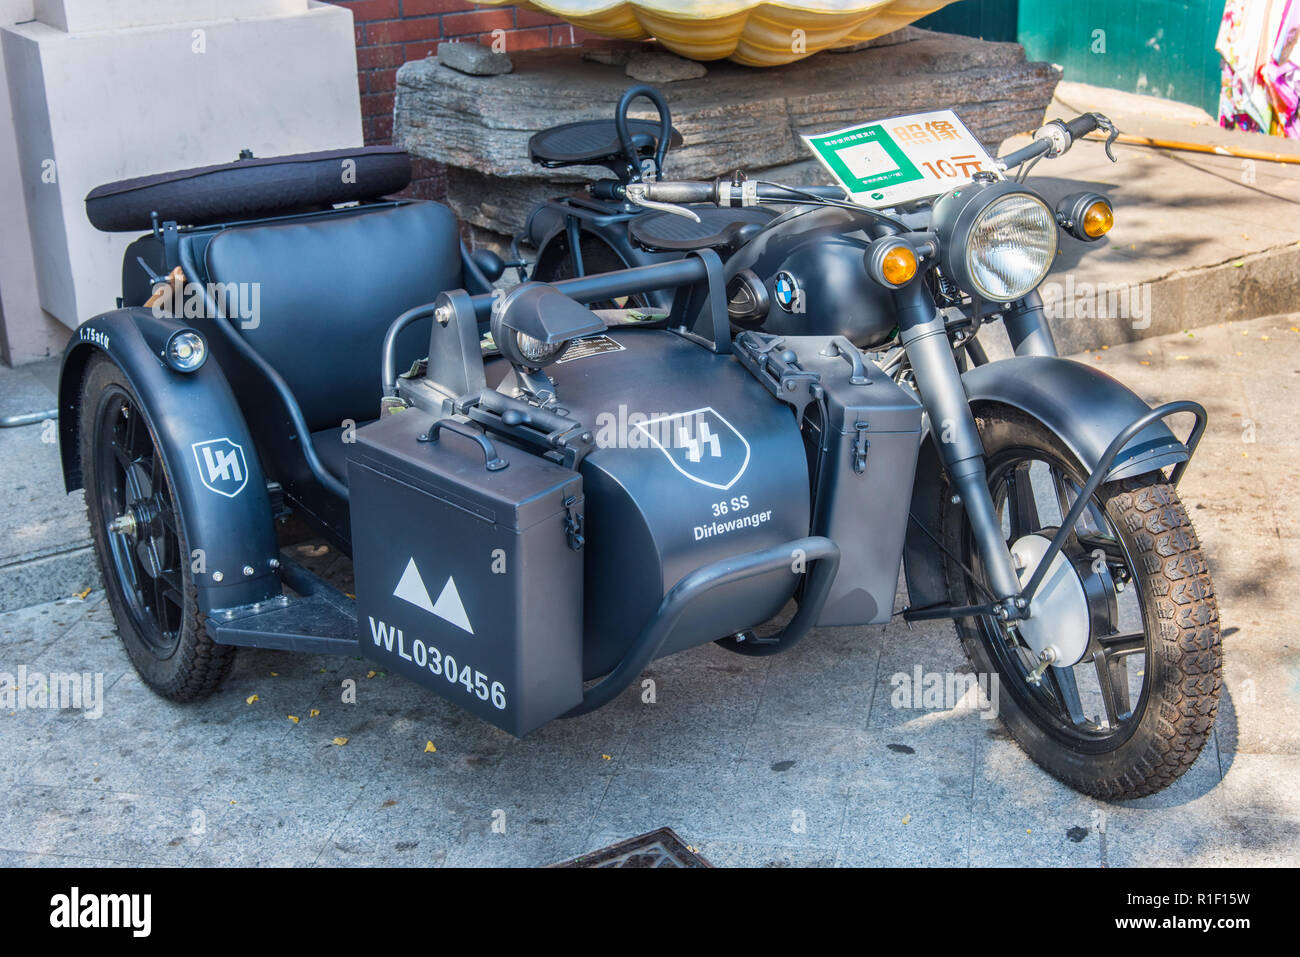 DALIAN, Liaoning, Chine - 22 juil 2018 : BMW moto et side-car, dans la livrée de la Brigade Dirlewanger un célèbre unité de la Waffen SS. Provenanc Banque D'Images